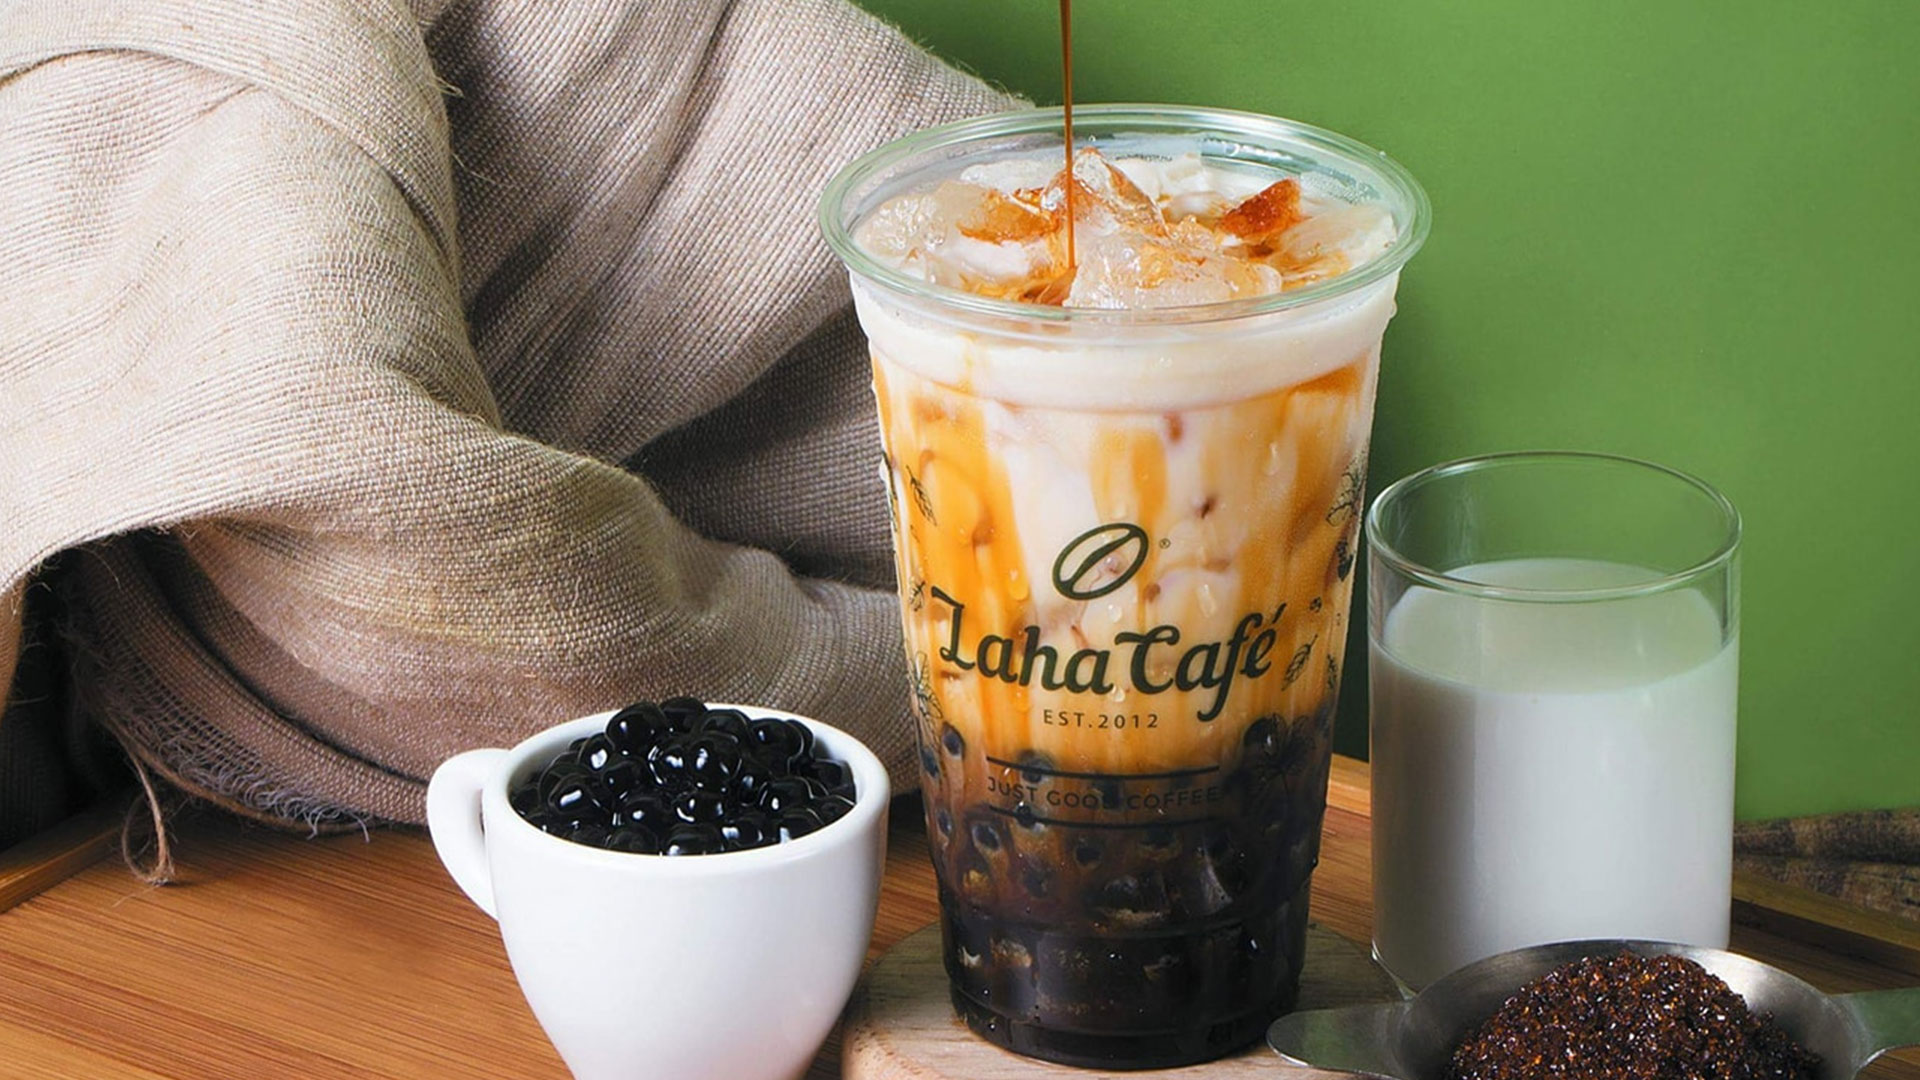 Có hẹn với Laha Cafe, đừng quên lấy Mã Giảm Giá 25% trên app VinID